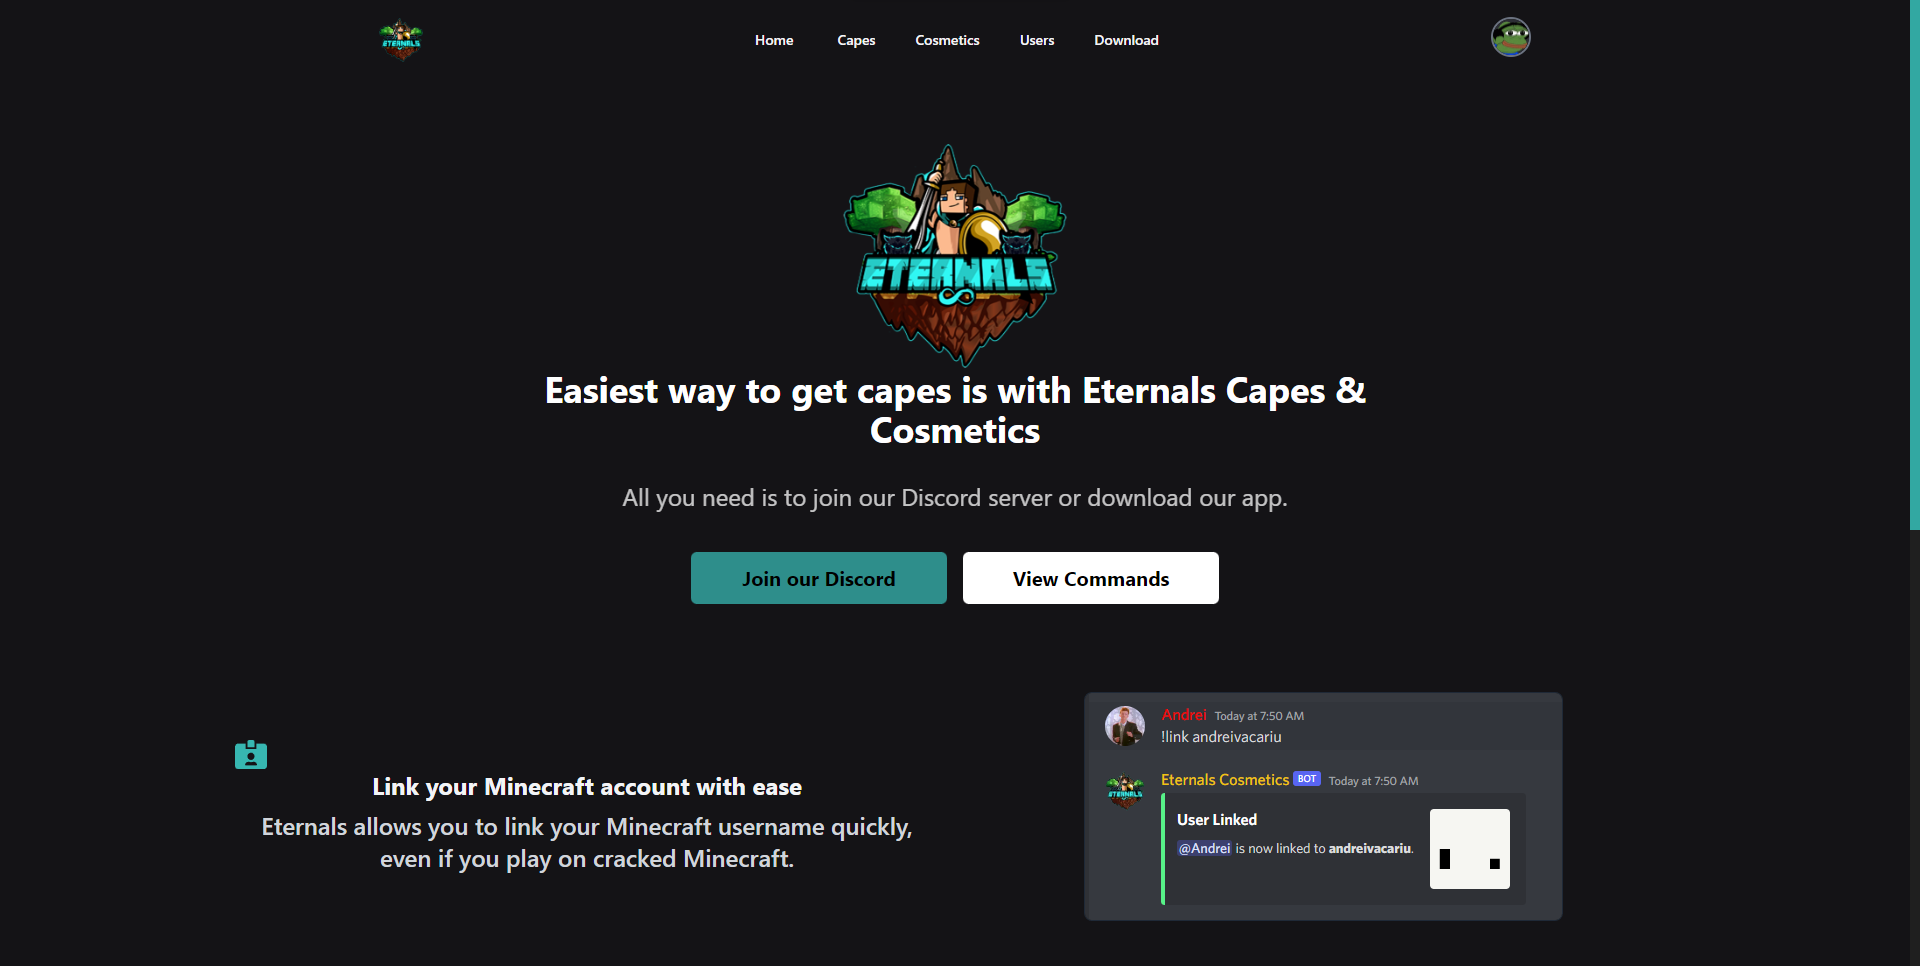 Eternals Capes App